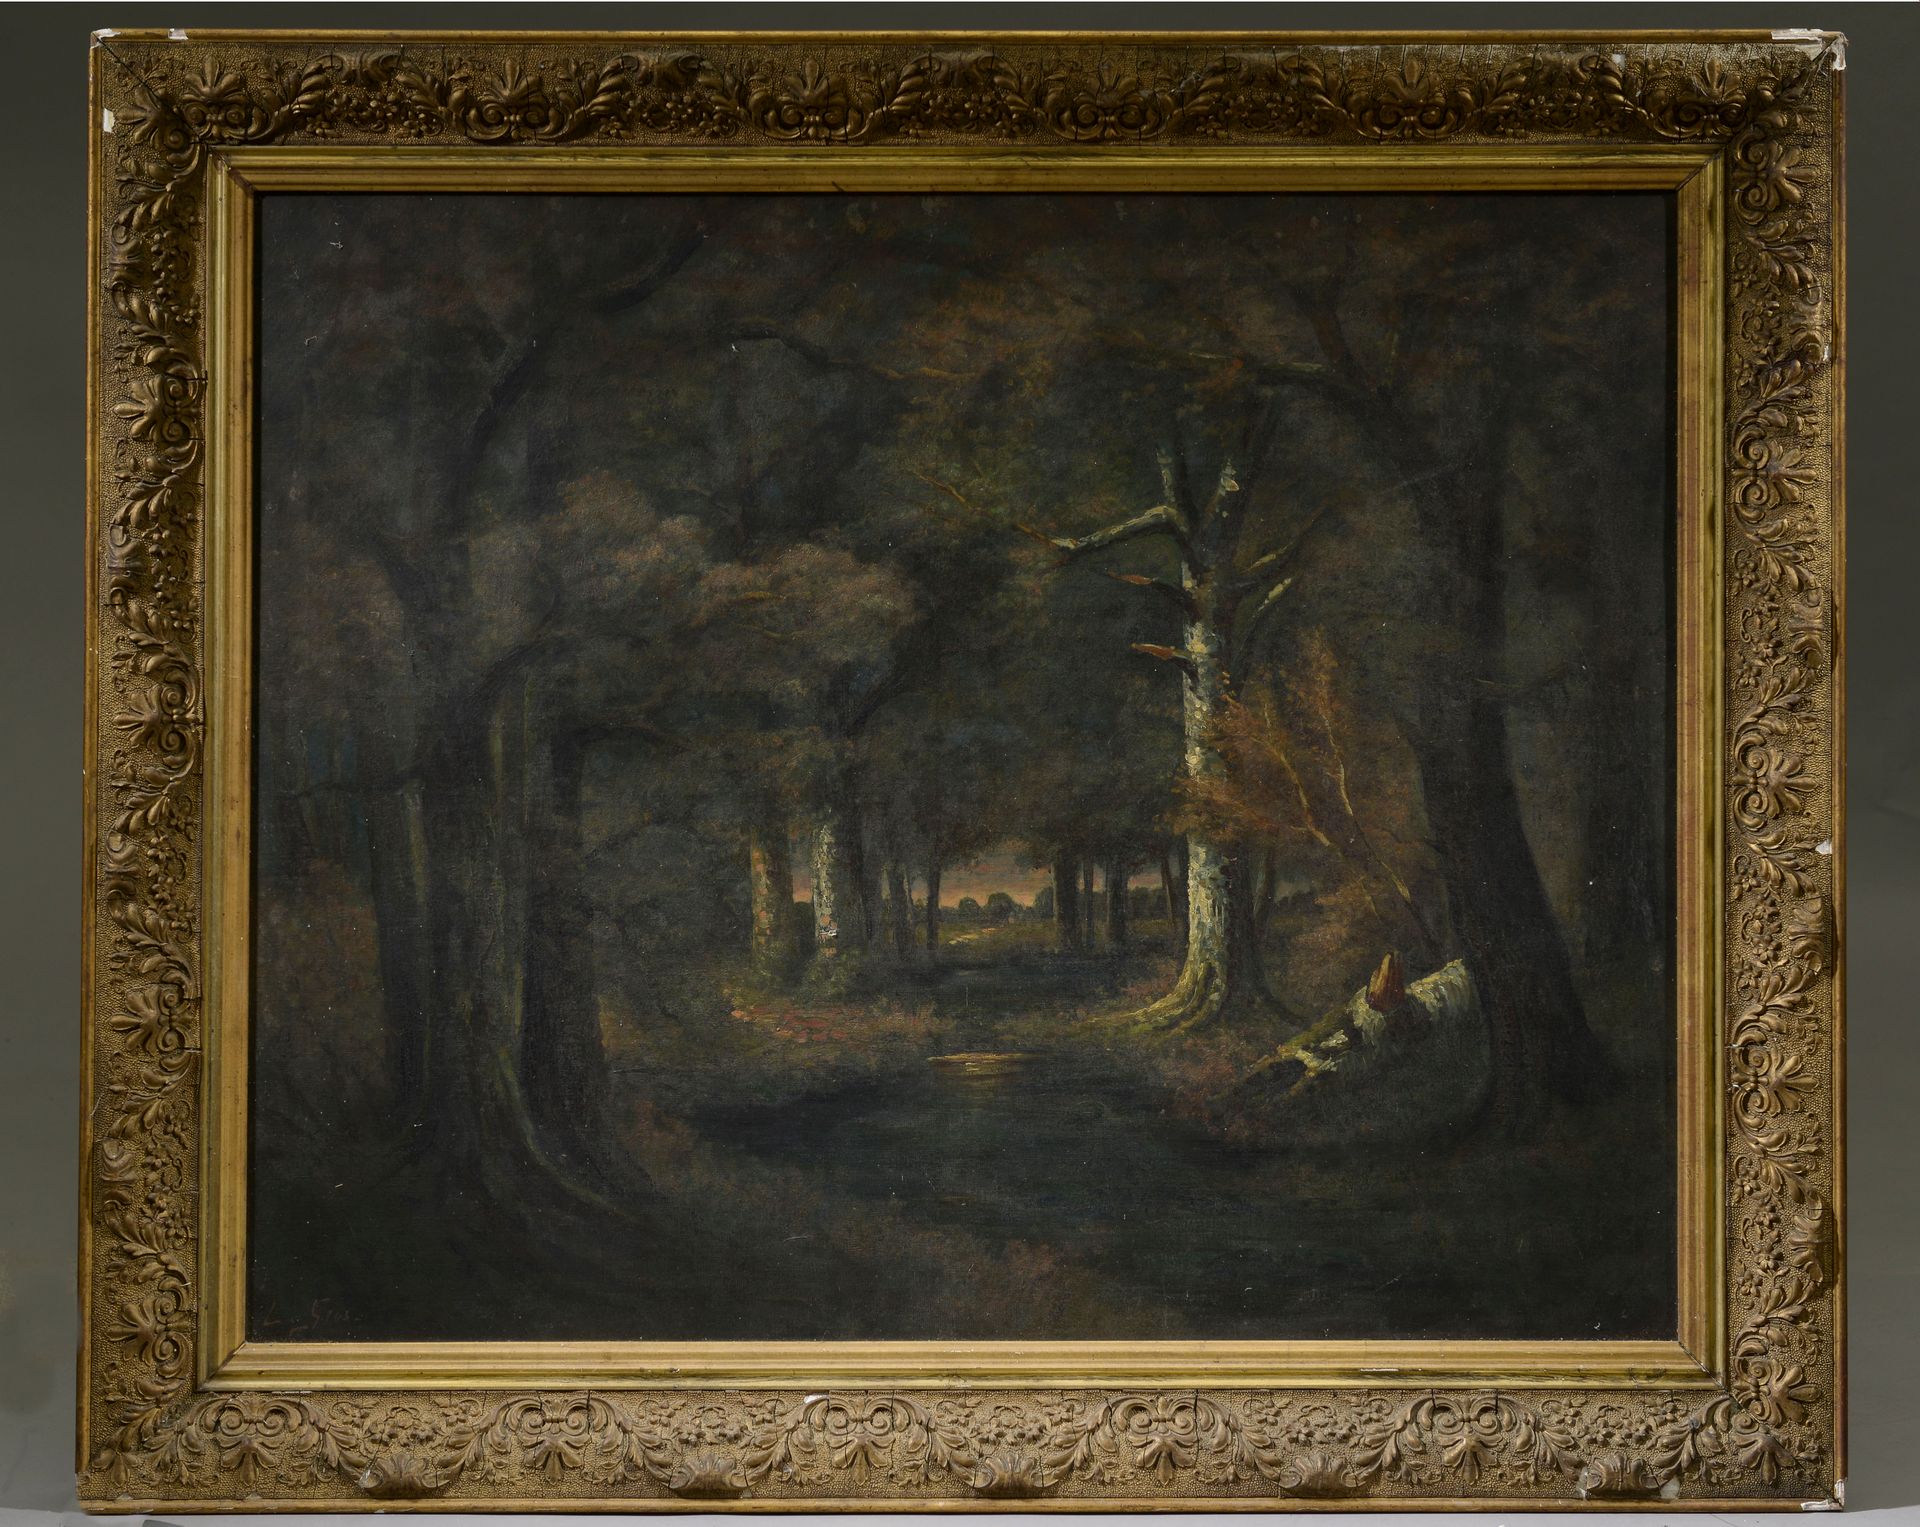 Null L. GROS (20世纪)

矮树丛。

布面油画，左下方有签名。

高度：83.5厘米。83.5 cm - 宽度： 100 cm